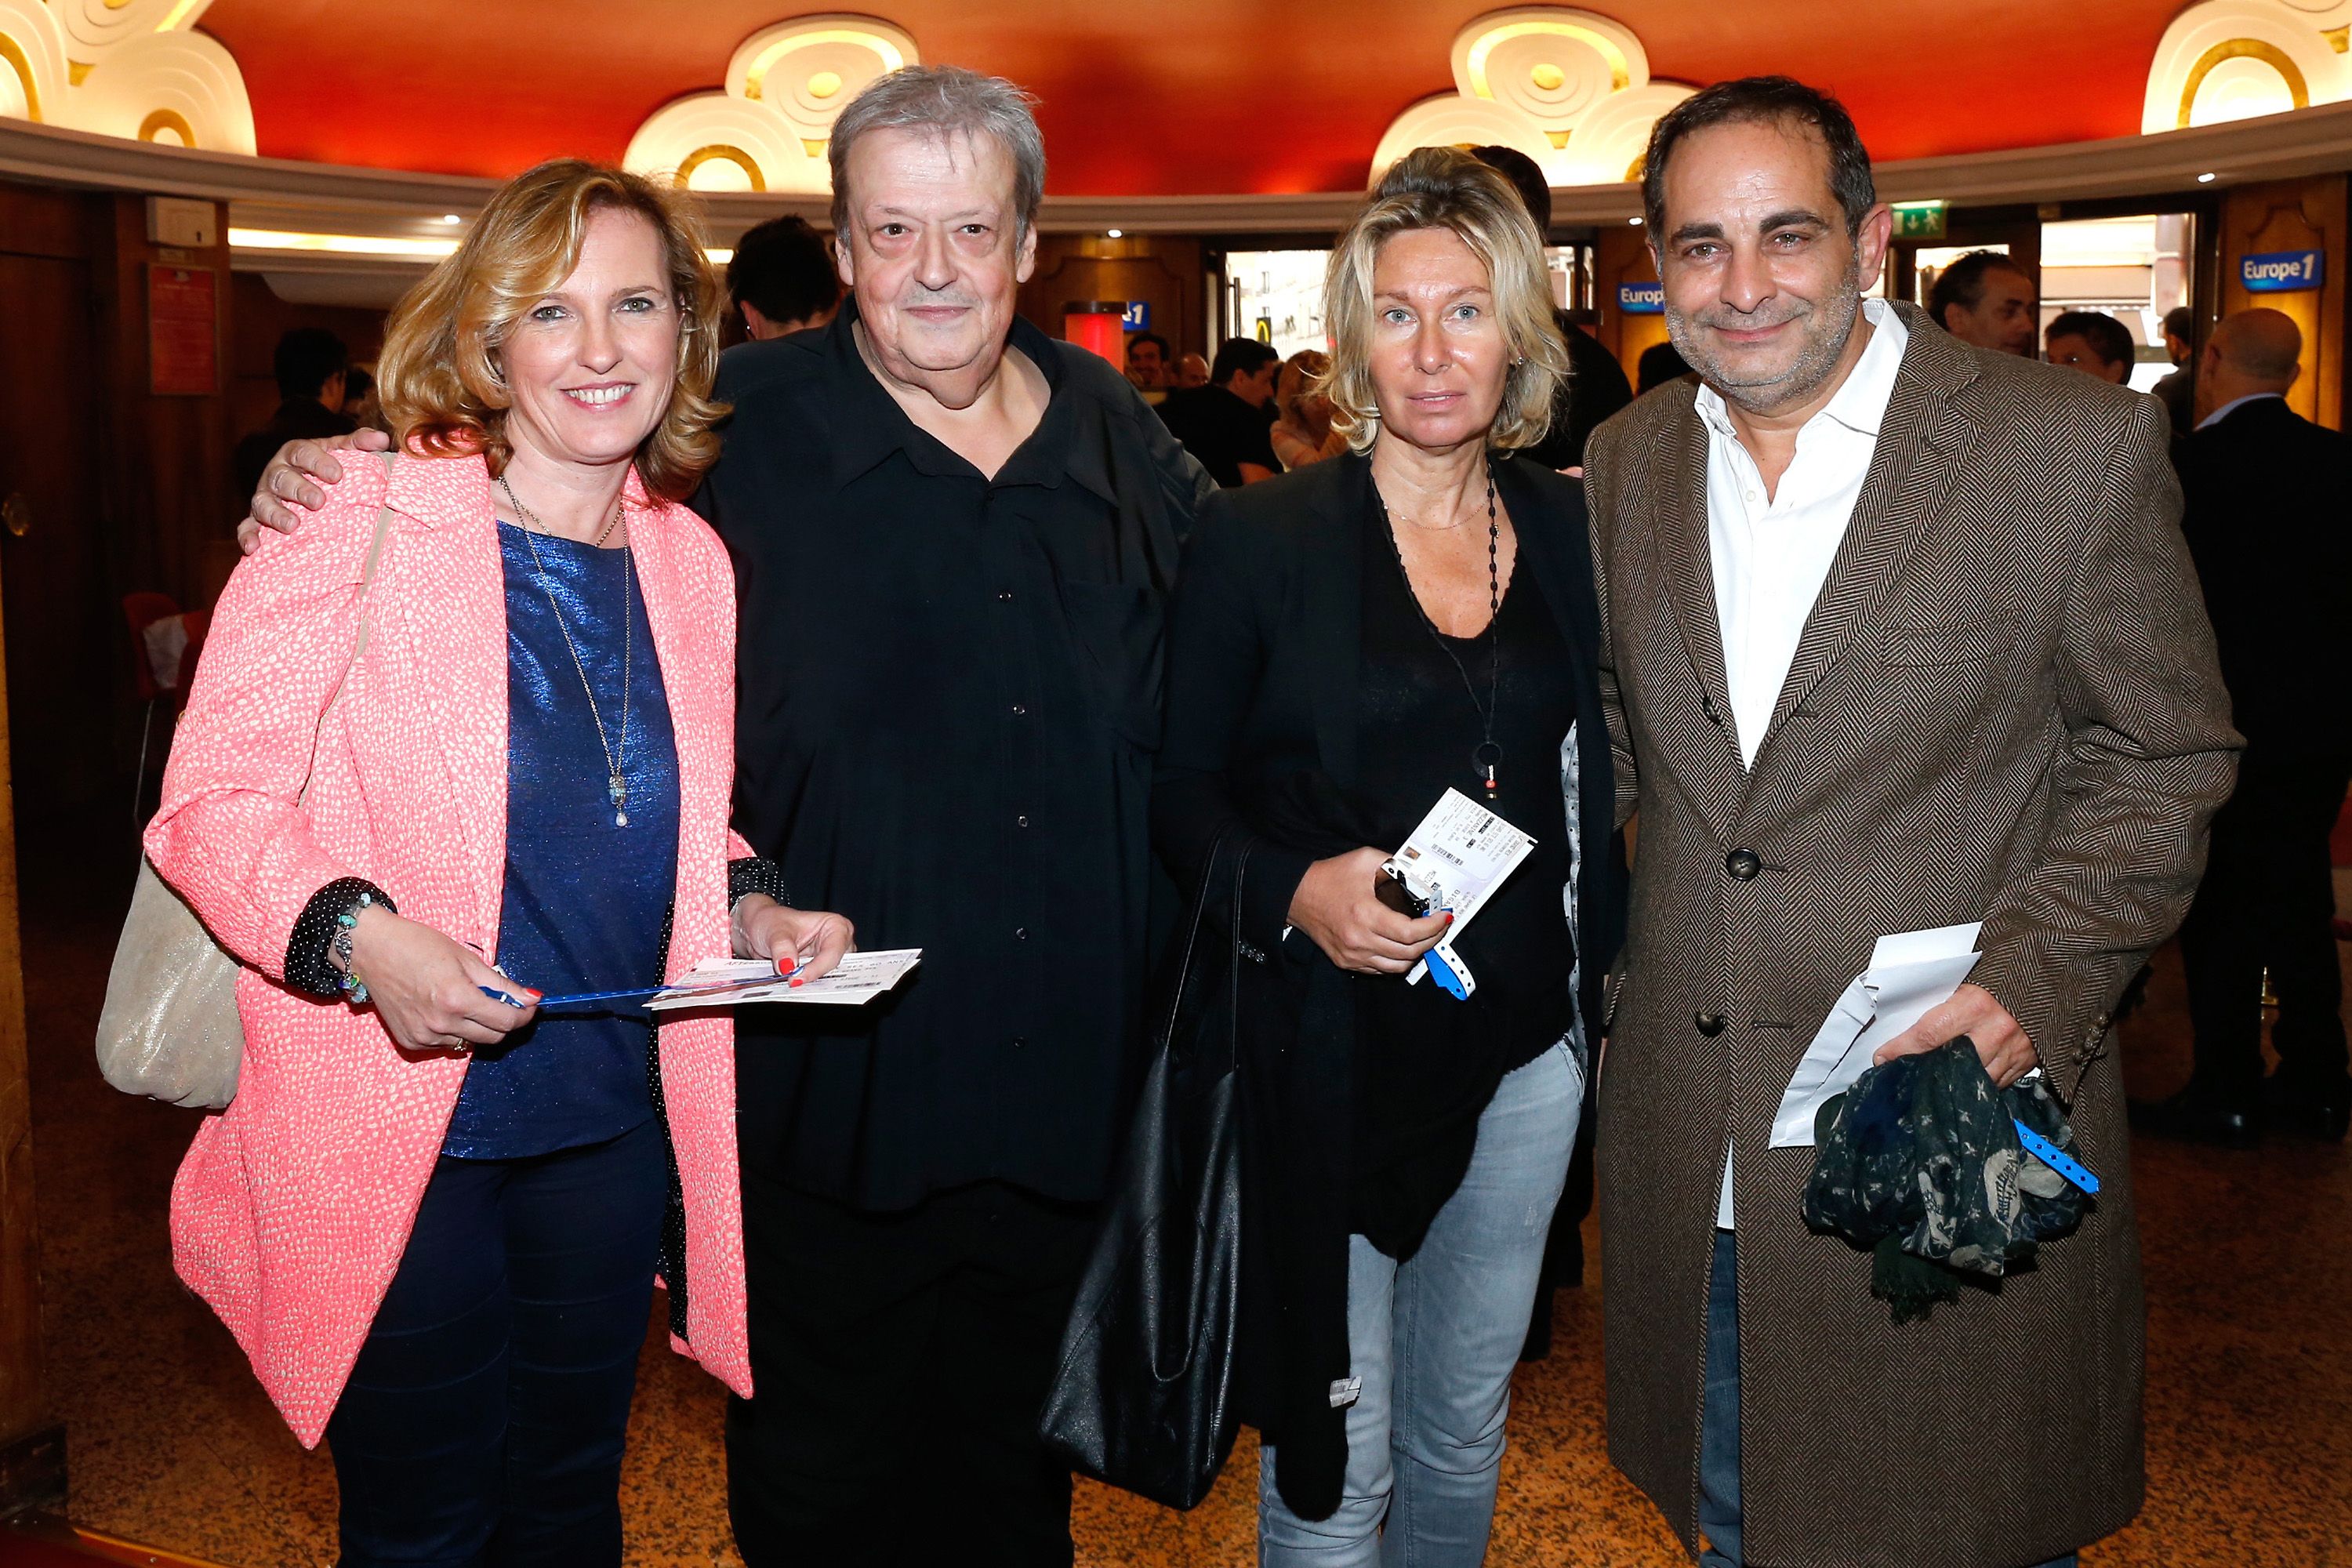 Guy Carlier et son épouse Joséphine Dard, avec Laurent Fontaine et son invité, au Grand Rex le 23 mai 2014 à Paris, France. | Photo : Getty Images